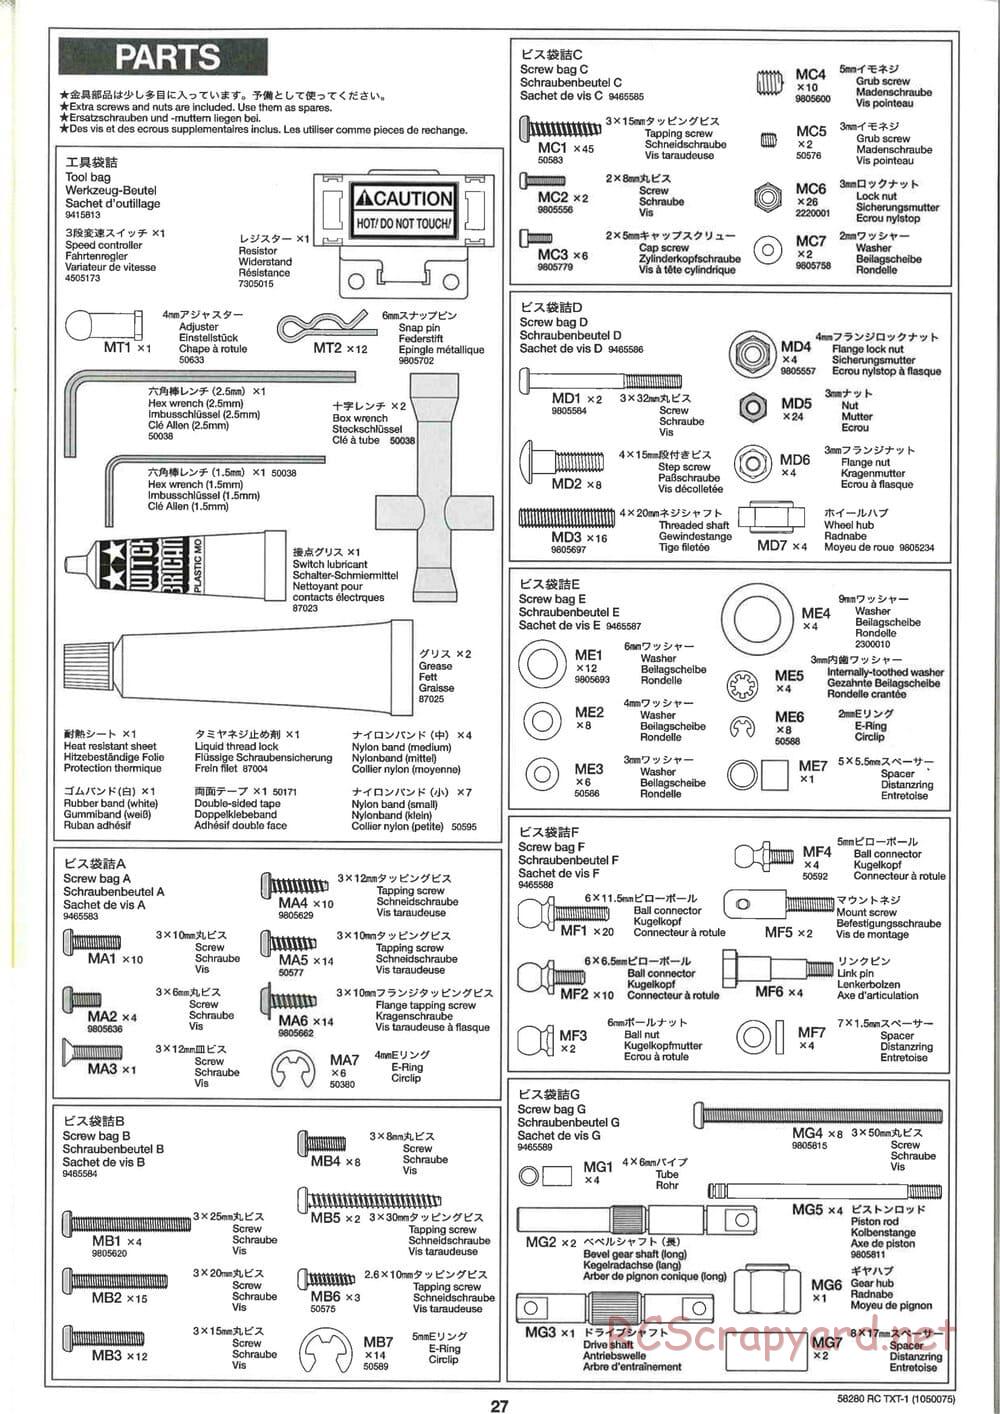 Tamiya - TXT-1 (Tamiya Xtreme Truck) Chassis - Manual - Page 27